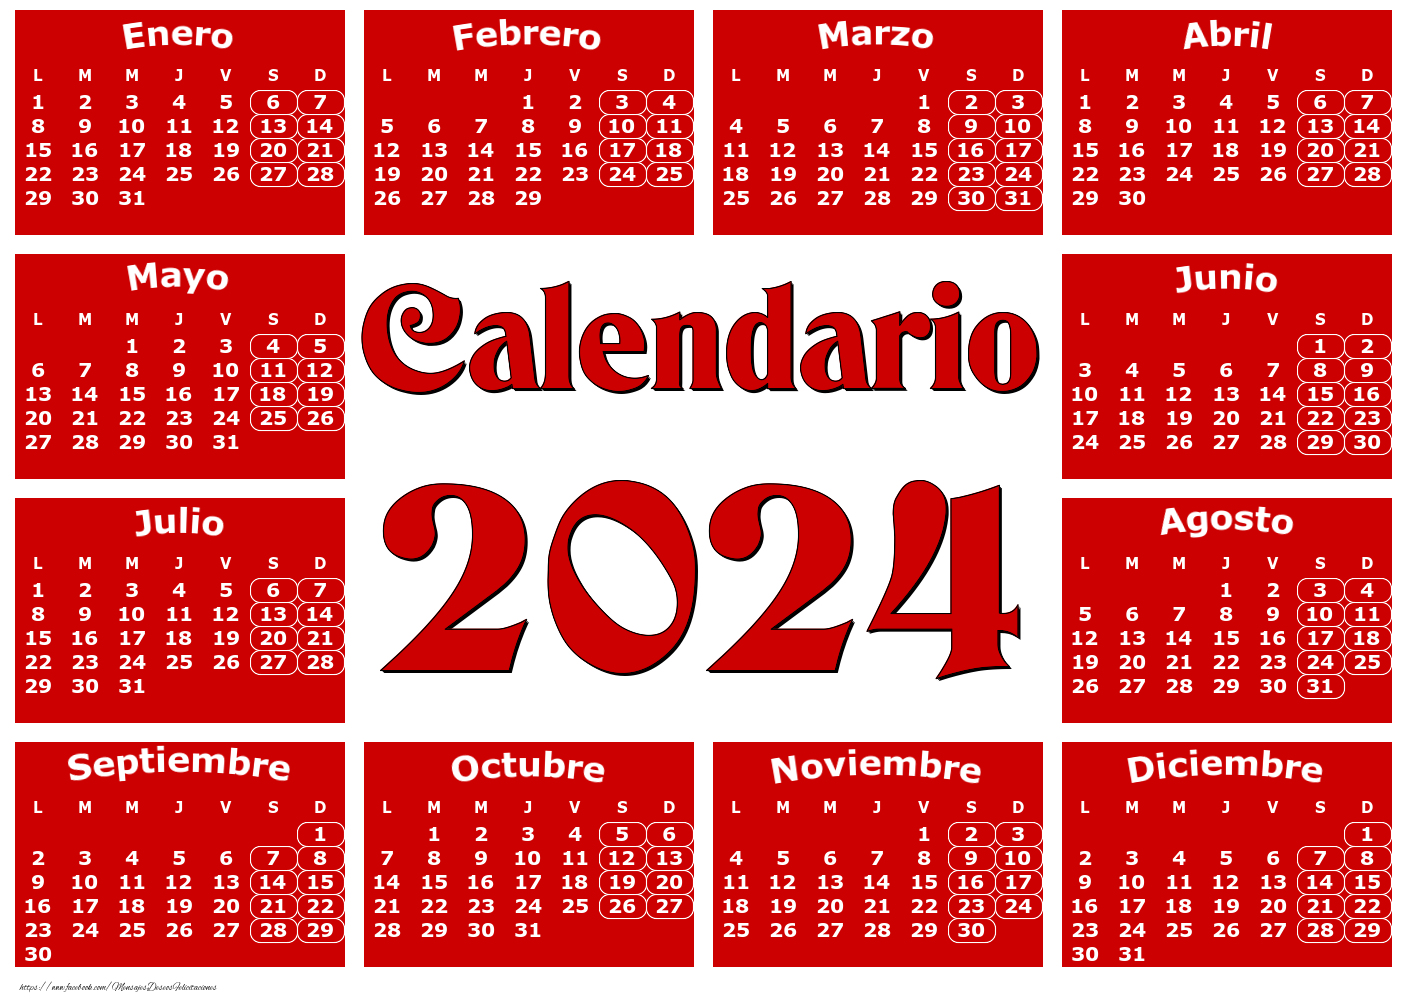 Calendario 2024 - Rojo clásico - Modelo 0020